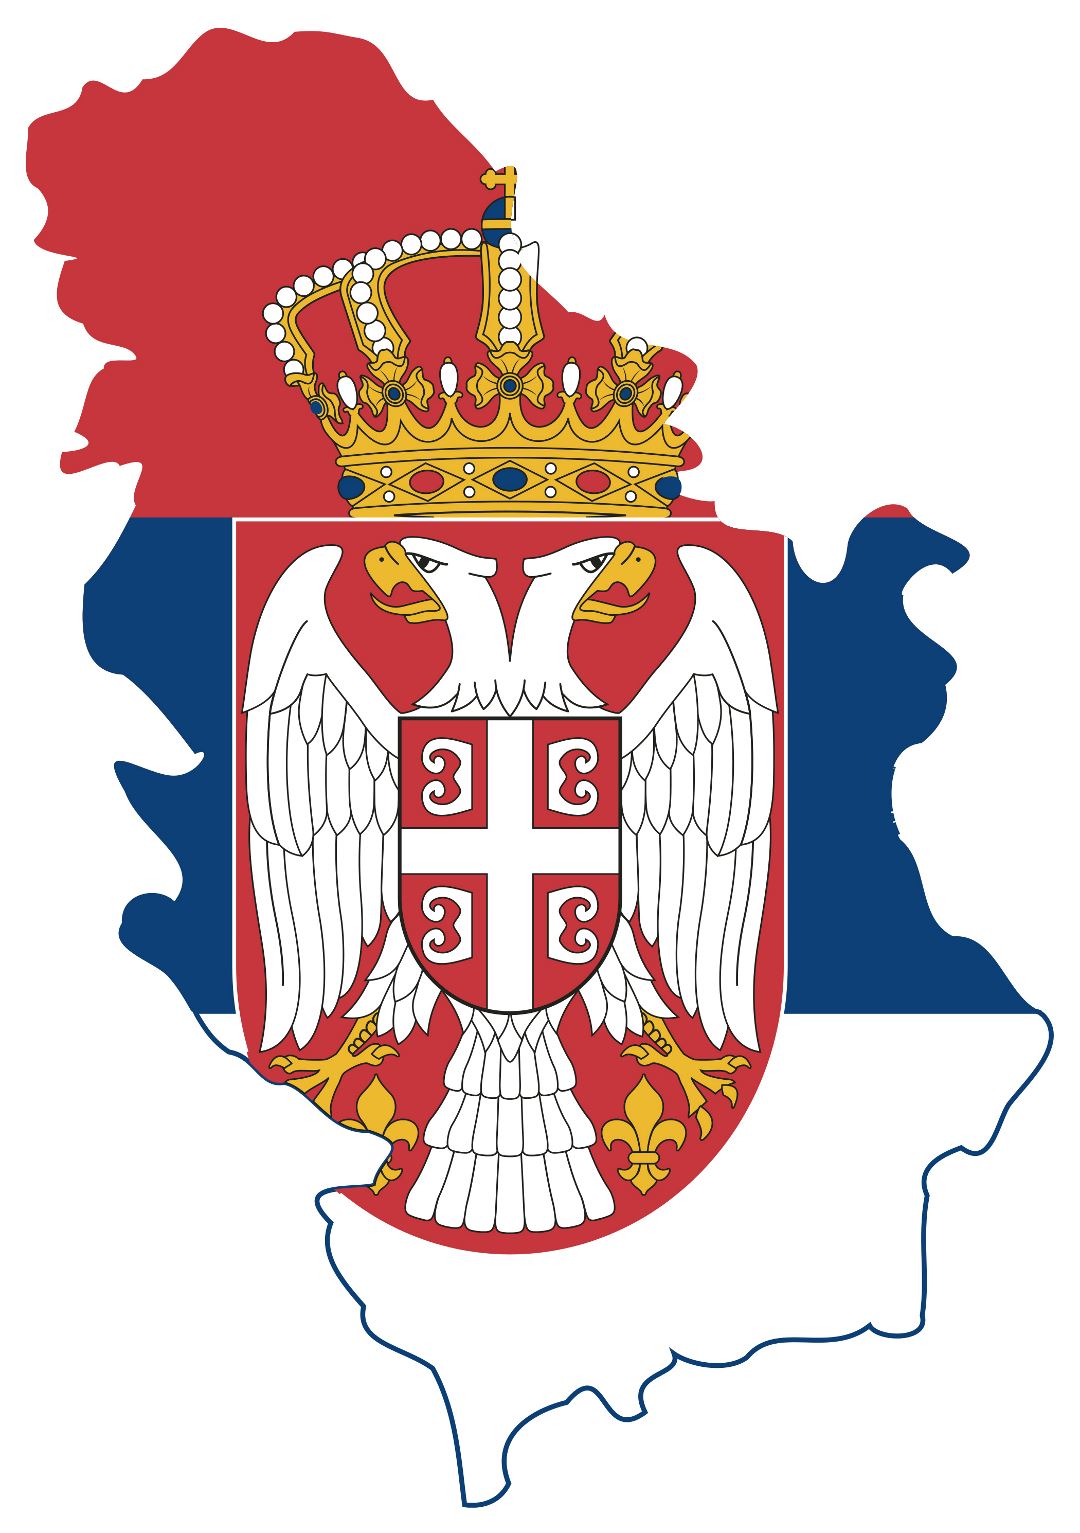 Grande bandera mapa de Serbia